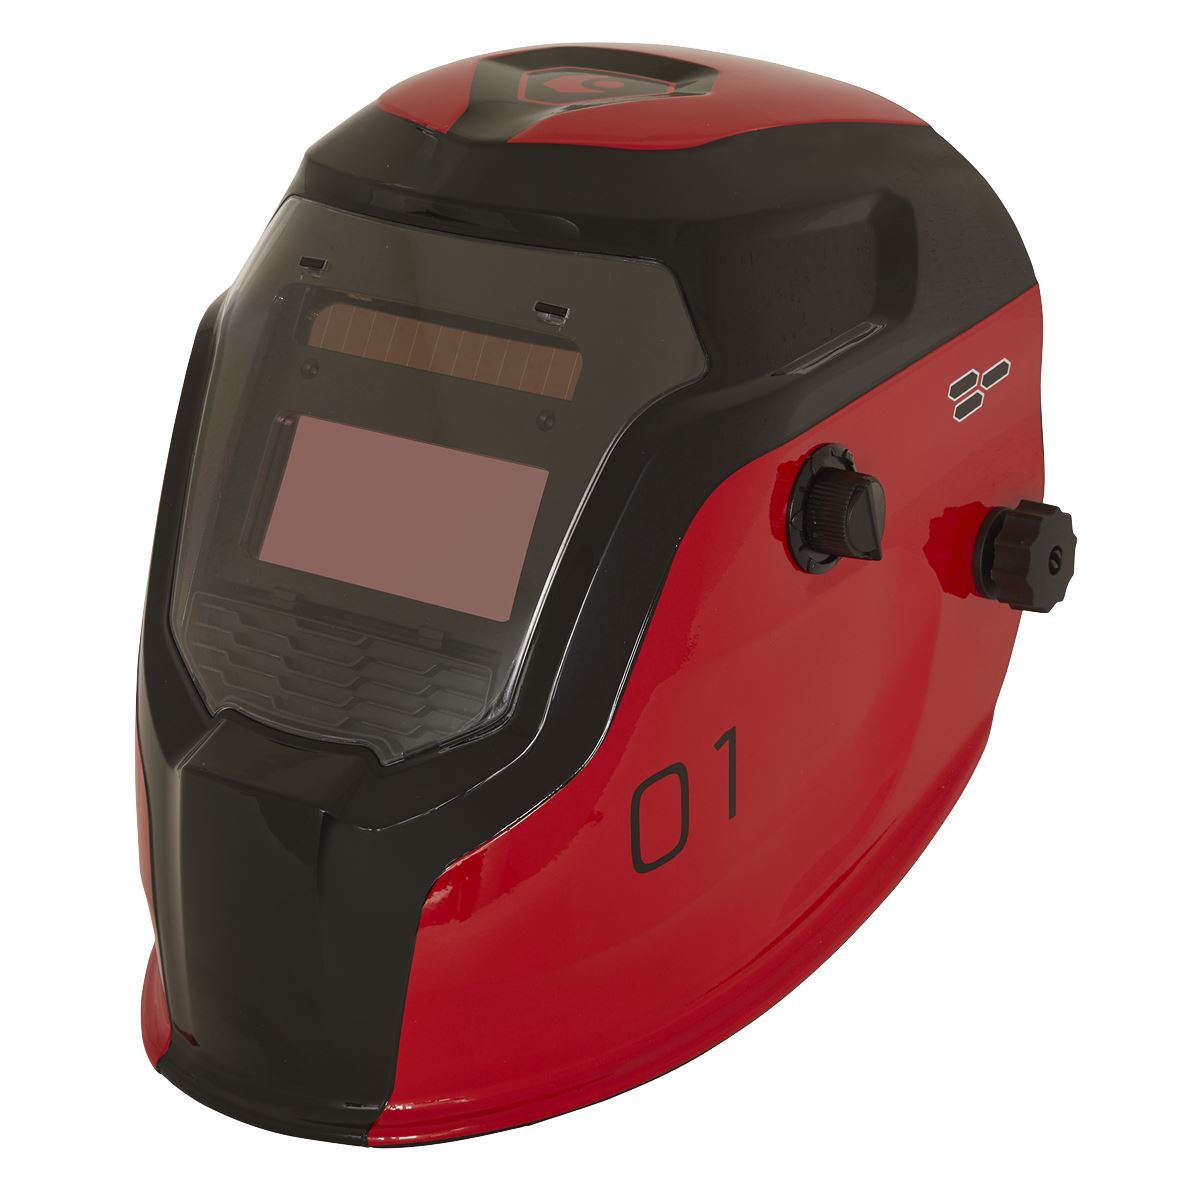 Sealey Auto Darkening Welding Helmet Shade 9-13 Red